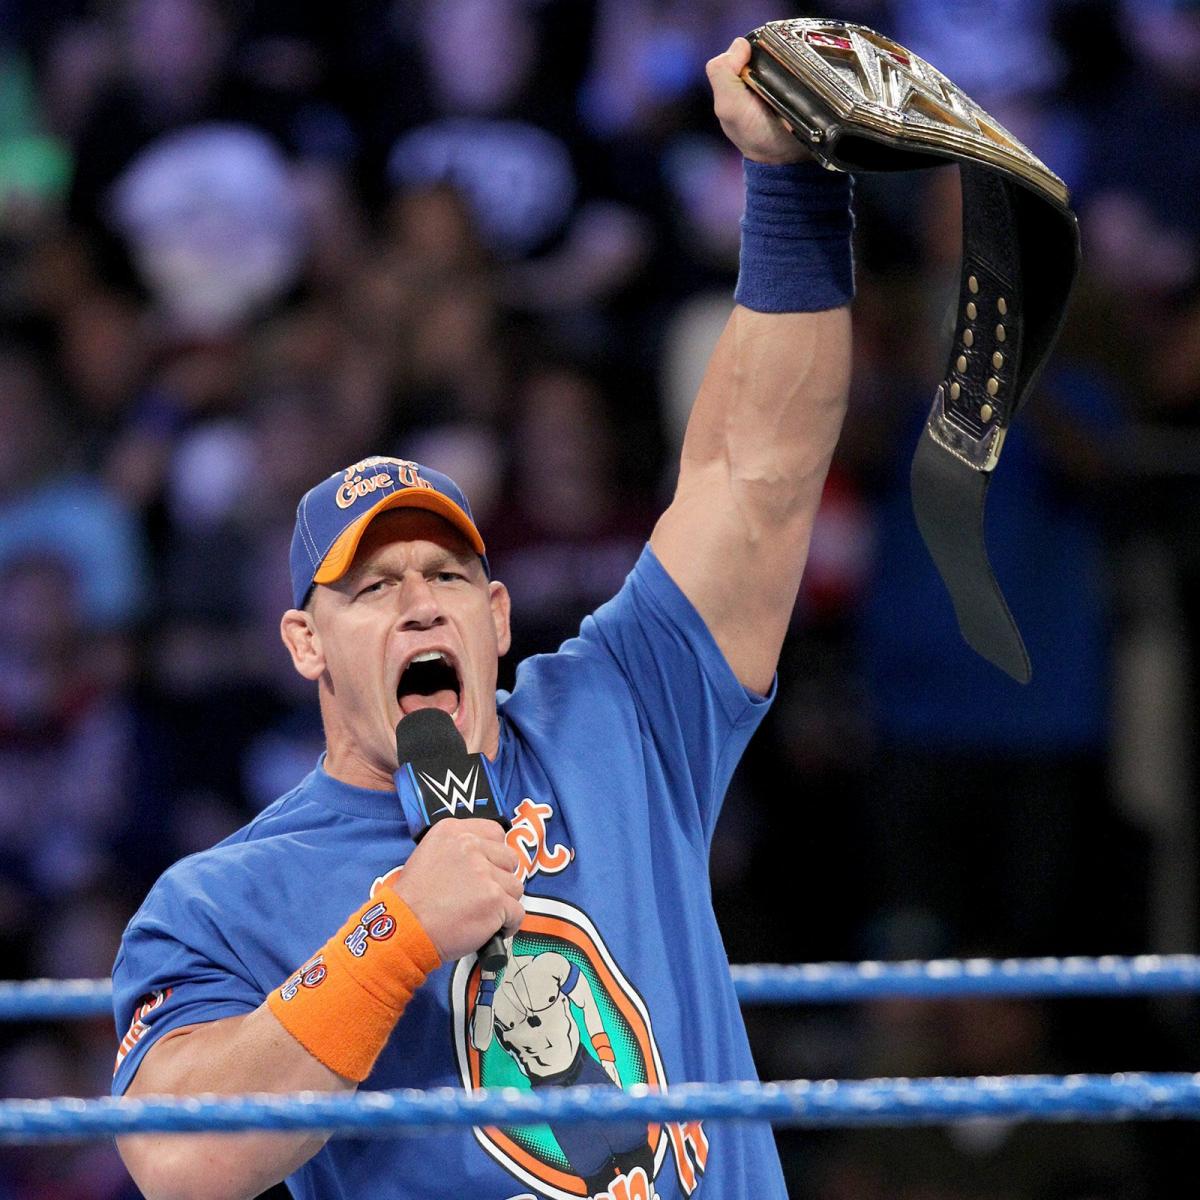 John Cena 16 Time Wwe Champion - HD Wallpaper 